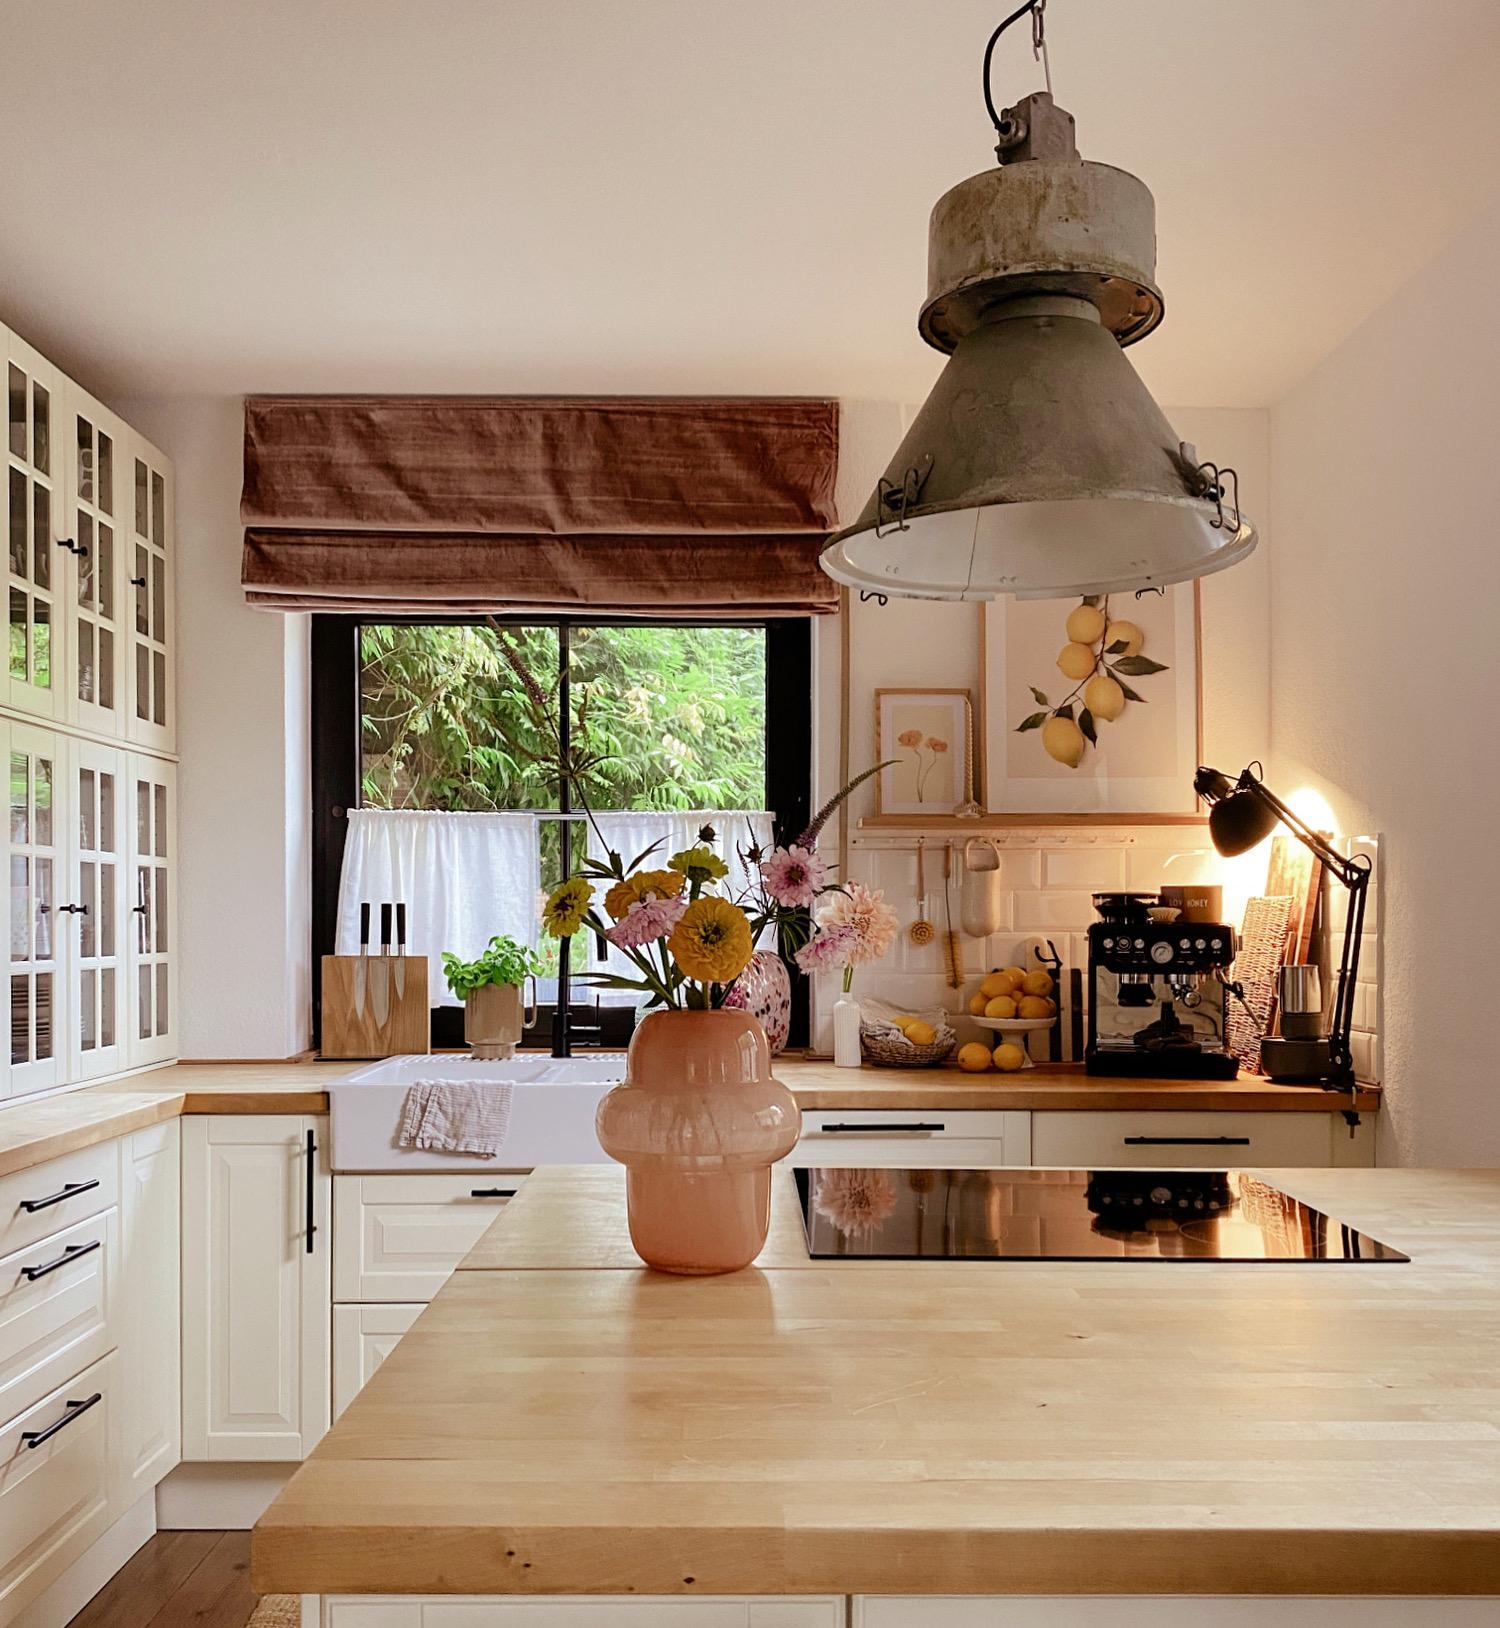 Küchensonntag 
#kitchen#kücheninsel#summerkitchen#küchendeko#dekoliebe#kitchenstories